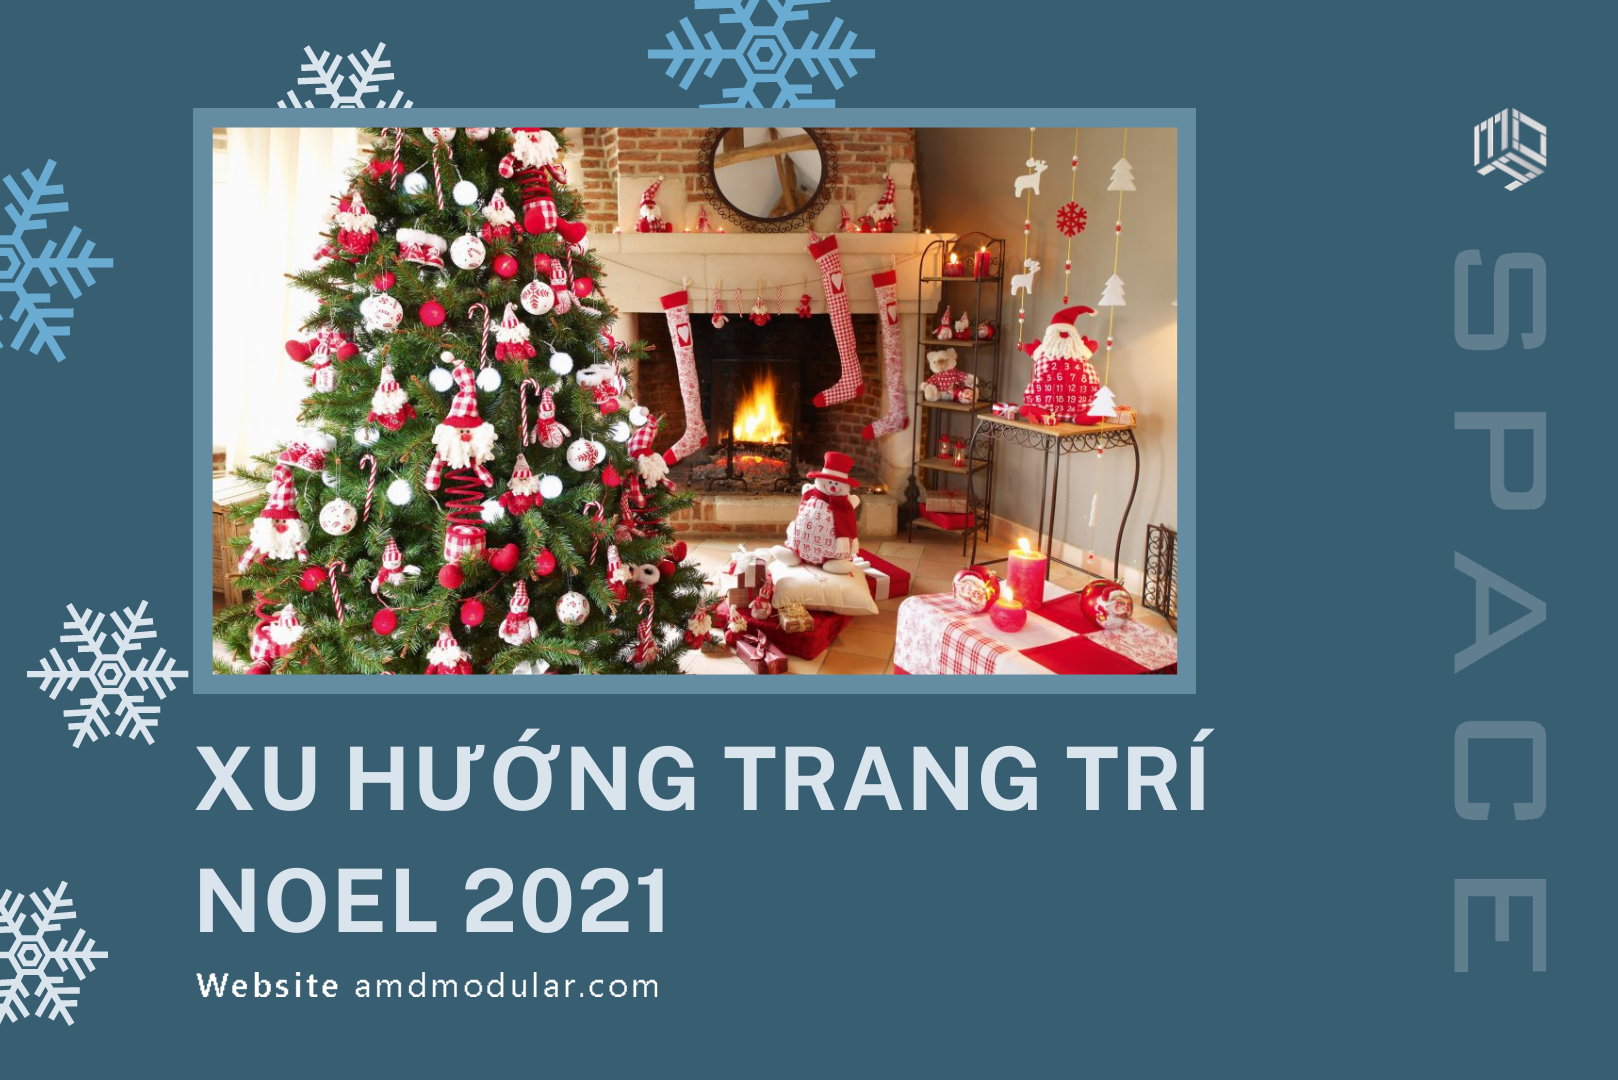 Năm 2024, không khí Noel ở Việt Nam lại trở nên sôi động hơn bao giờ hết và việc trang trí Noel cũng trở nên đa dạng và sáng tạo hơn. Với một loạt các ý tưởng trang trí mới lạ, bạn sẽ có thể tạo ra một không gian đón Noel ấn tượng và đầy nghệ thuật. Hãy tái tạo không gian sống của bạn với trang trí Noel 2024 đầy màu sắc và sinh động!